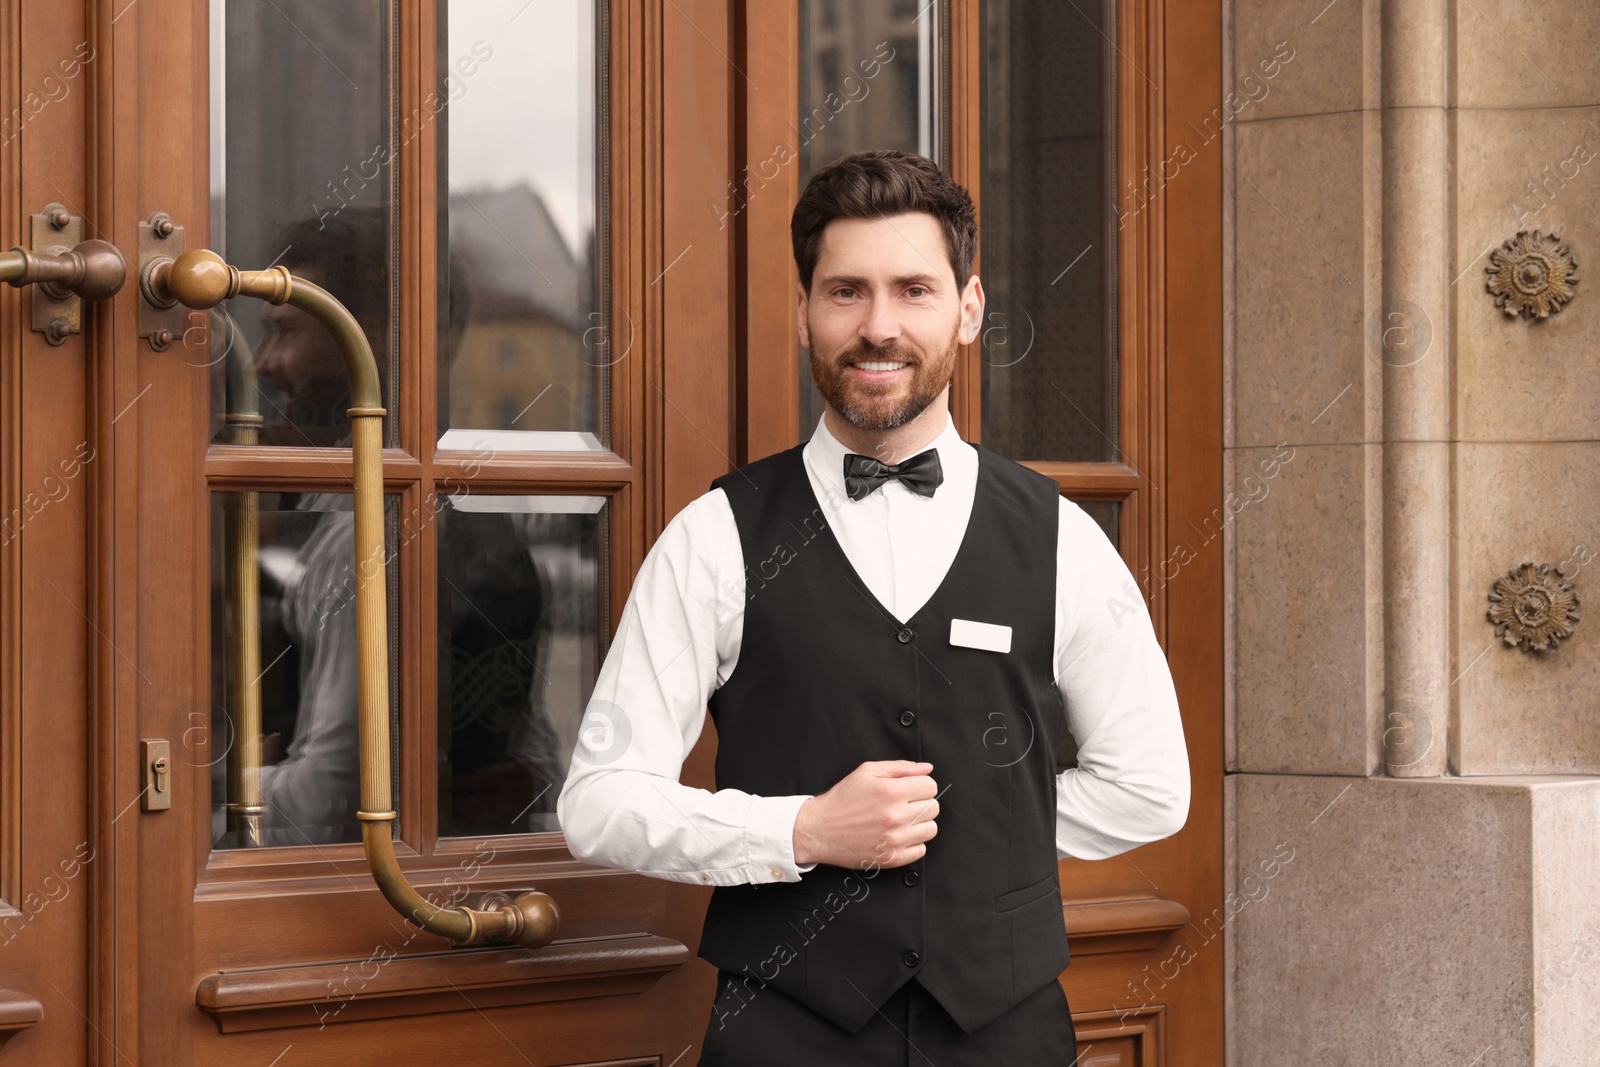 Photo of Butler in elegant suit near wooden hotel door. Space for text